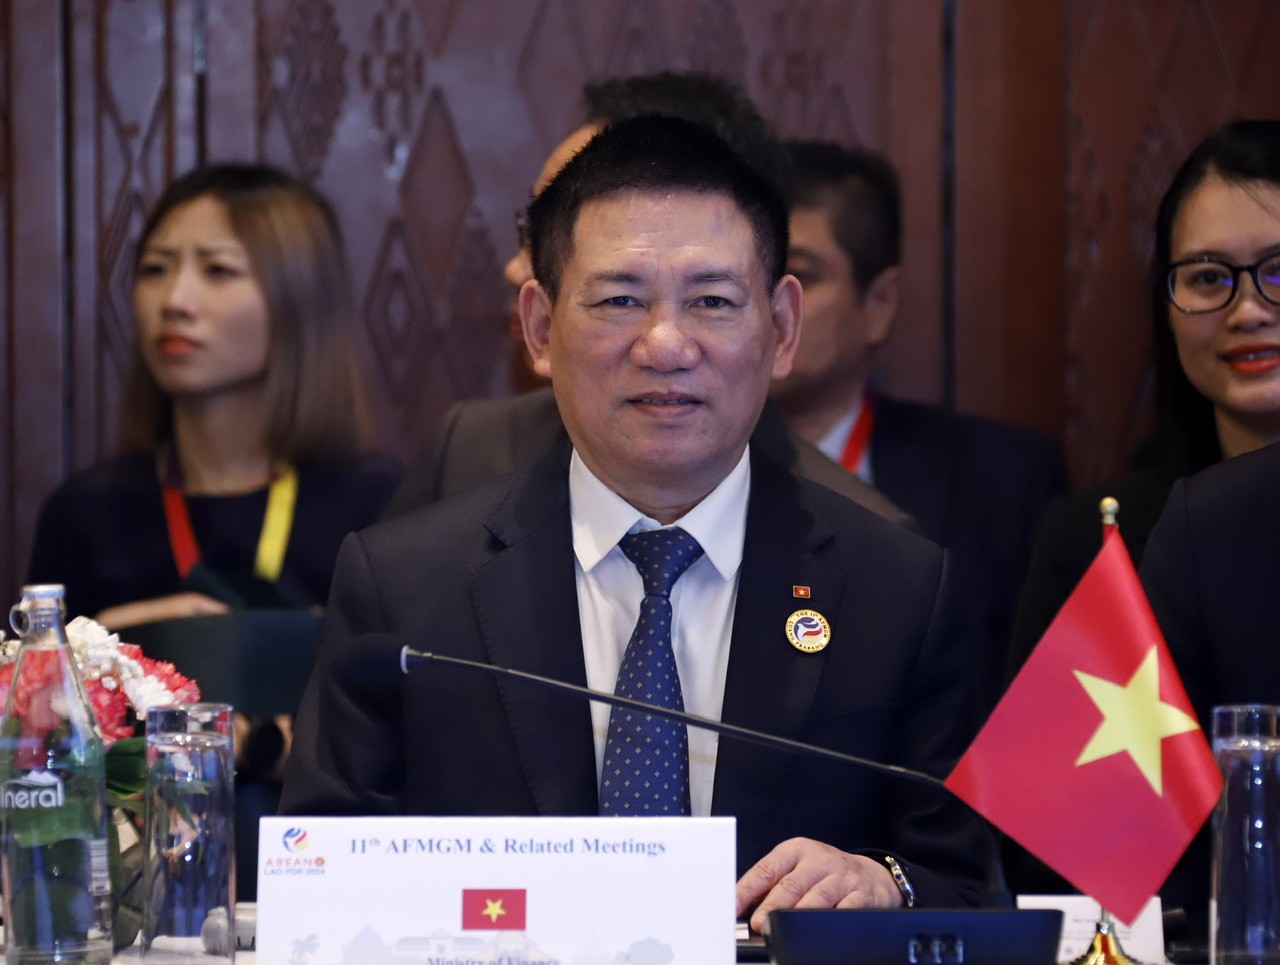 Bộ trưởng Hồ Đức Phớc dự chuỗi hội nghị đối thoại với các cộng đồng doanh nghiệp ASEAN